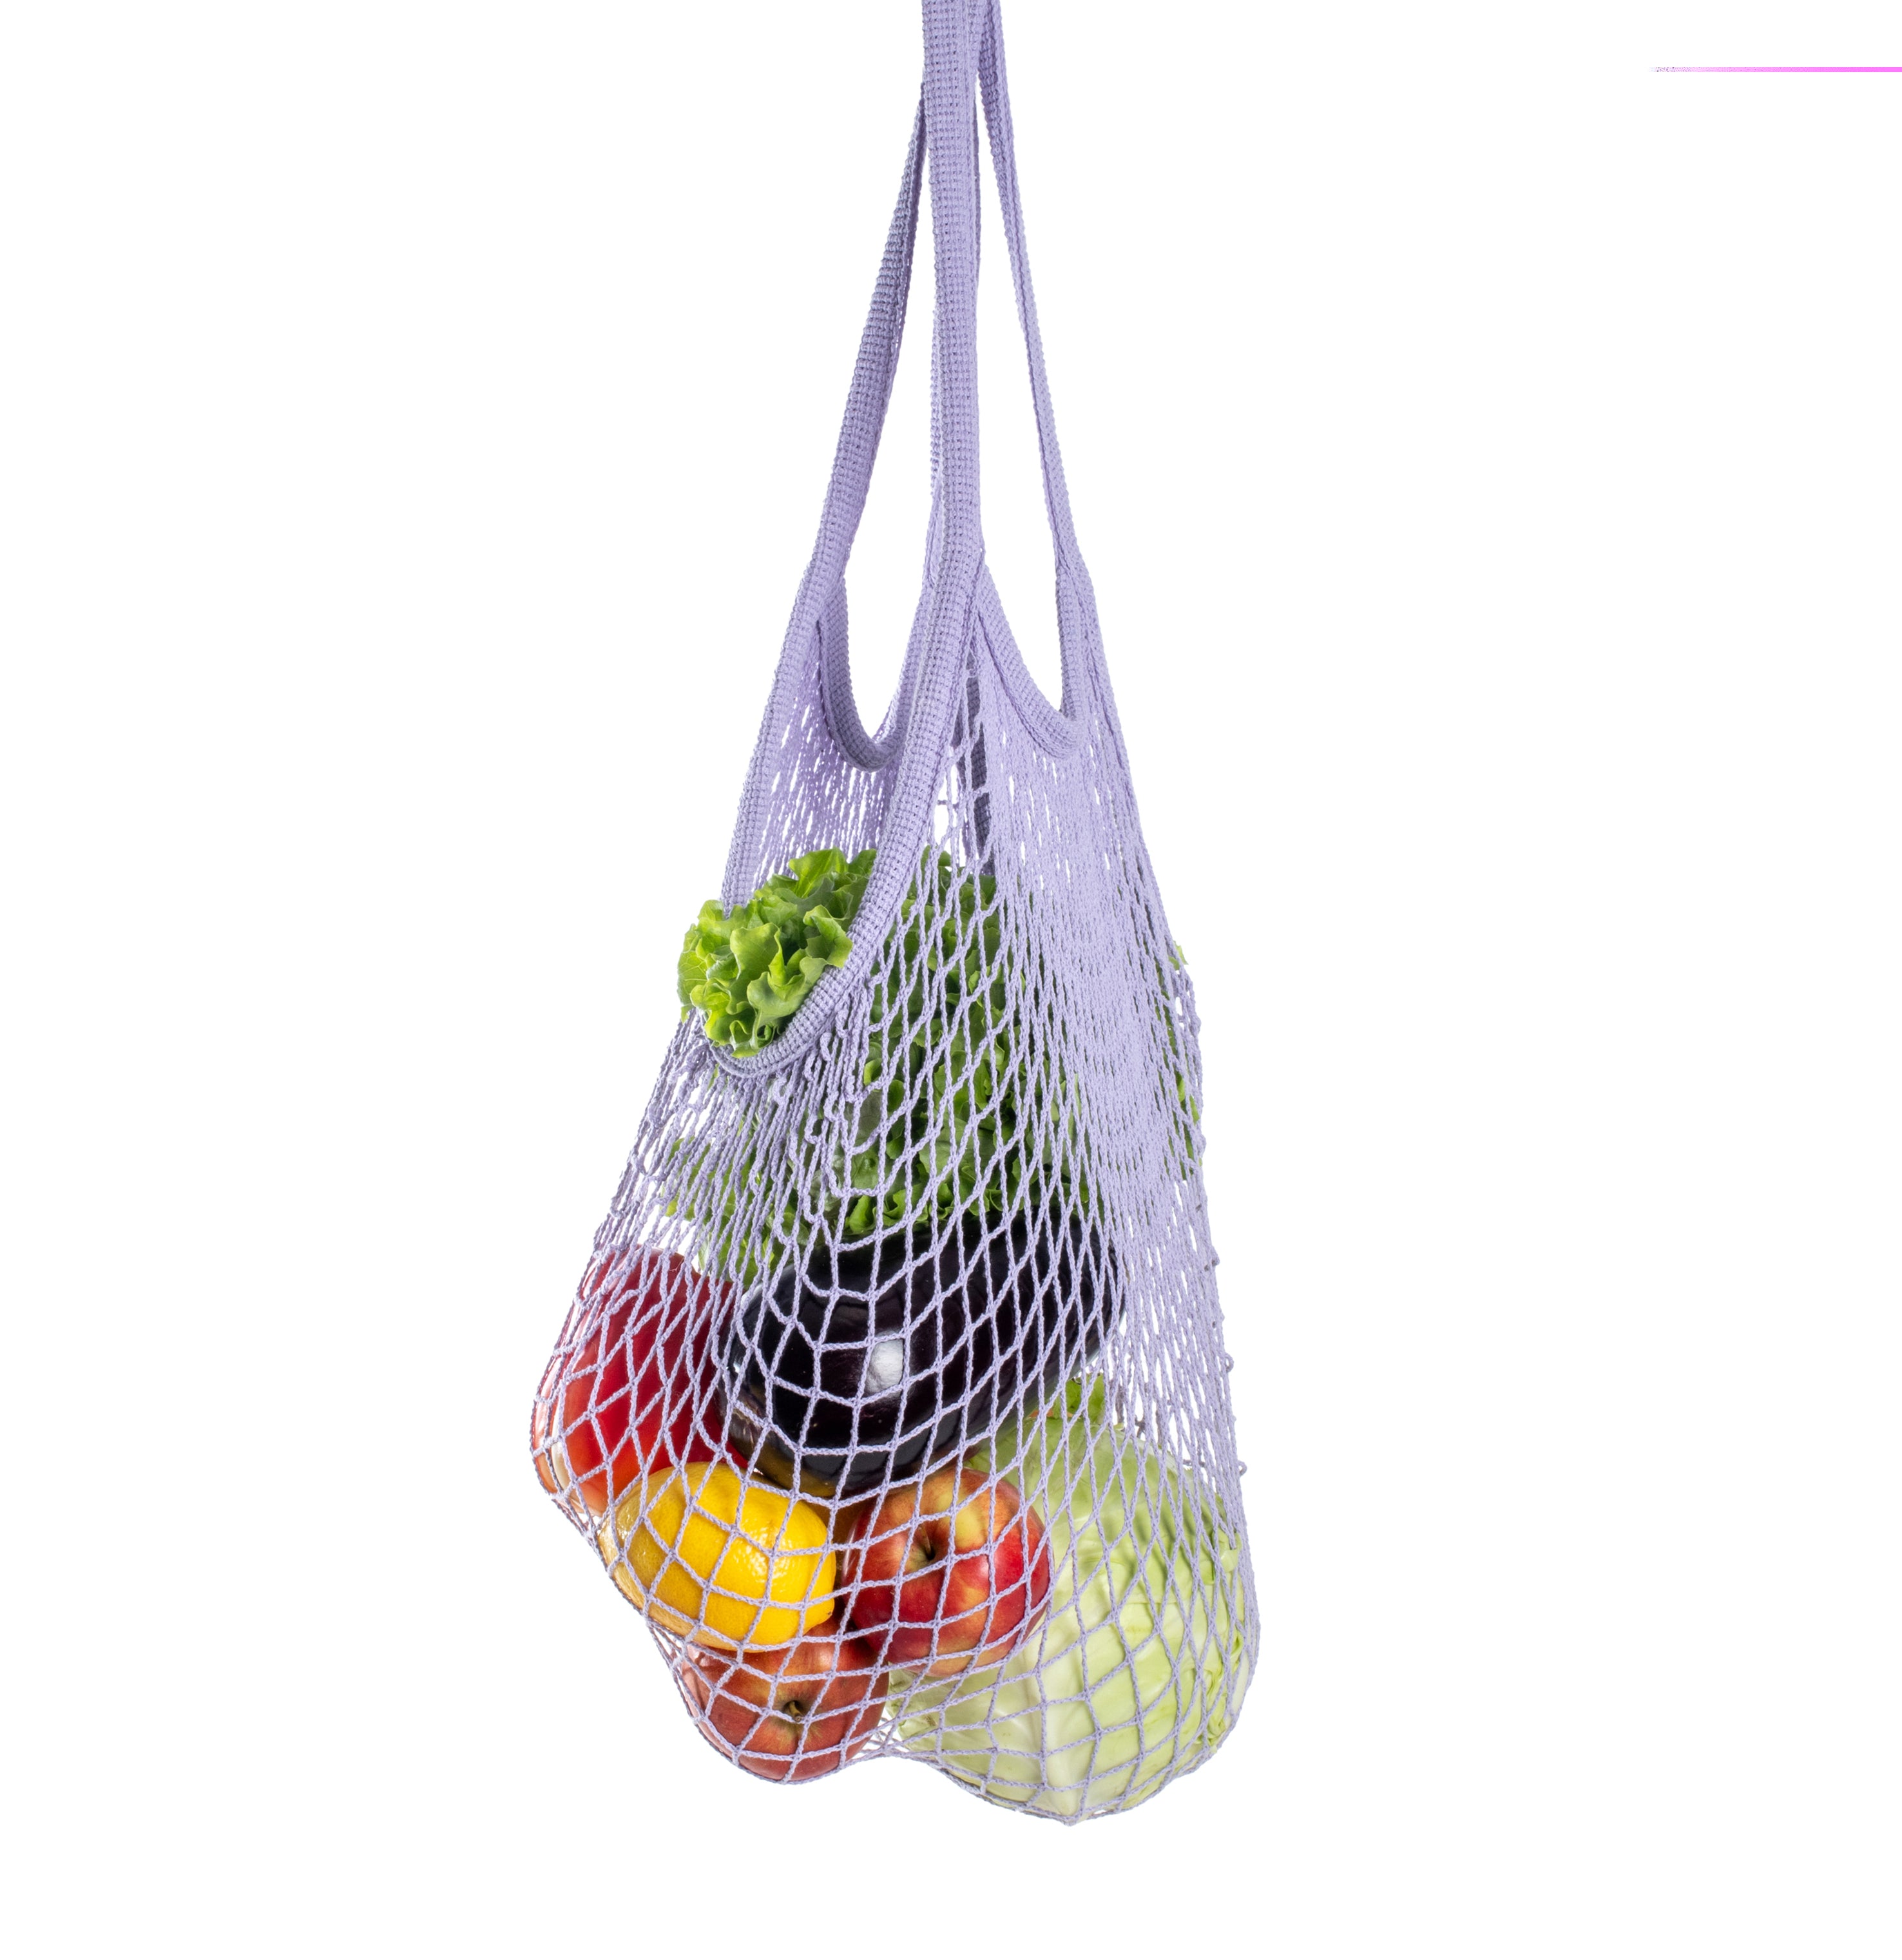 Rezginė sietka pirkinių krepšys alyvų spalvos, su vaisiais viduje, dovanų idėjos, mados aksesuarai moterims